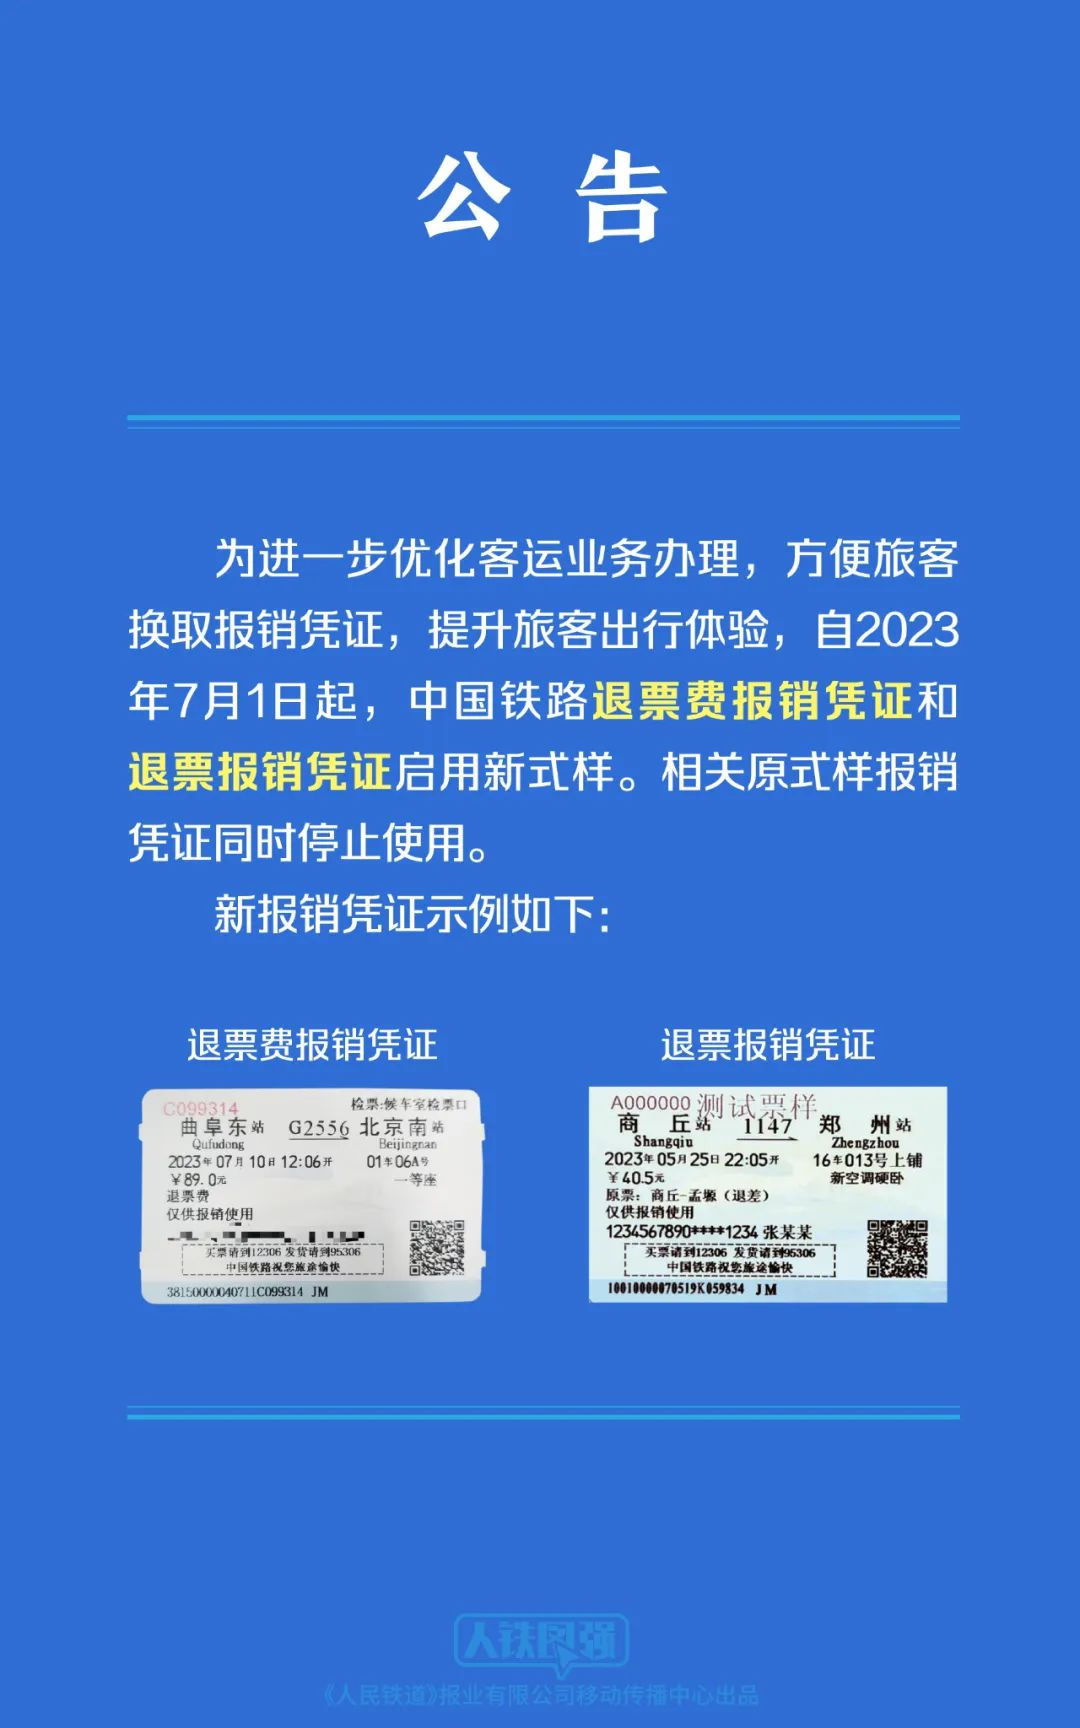 注意！中国铁路退票费报销凭证等启用新式样